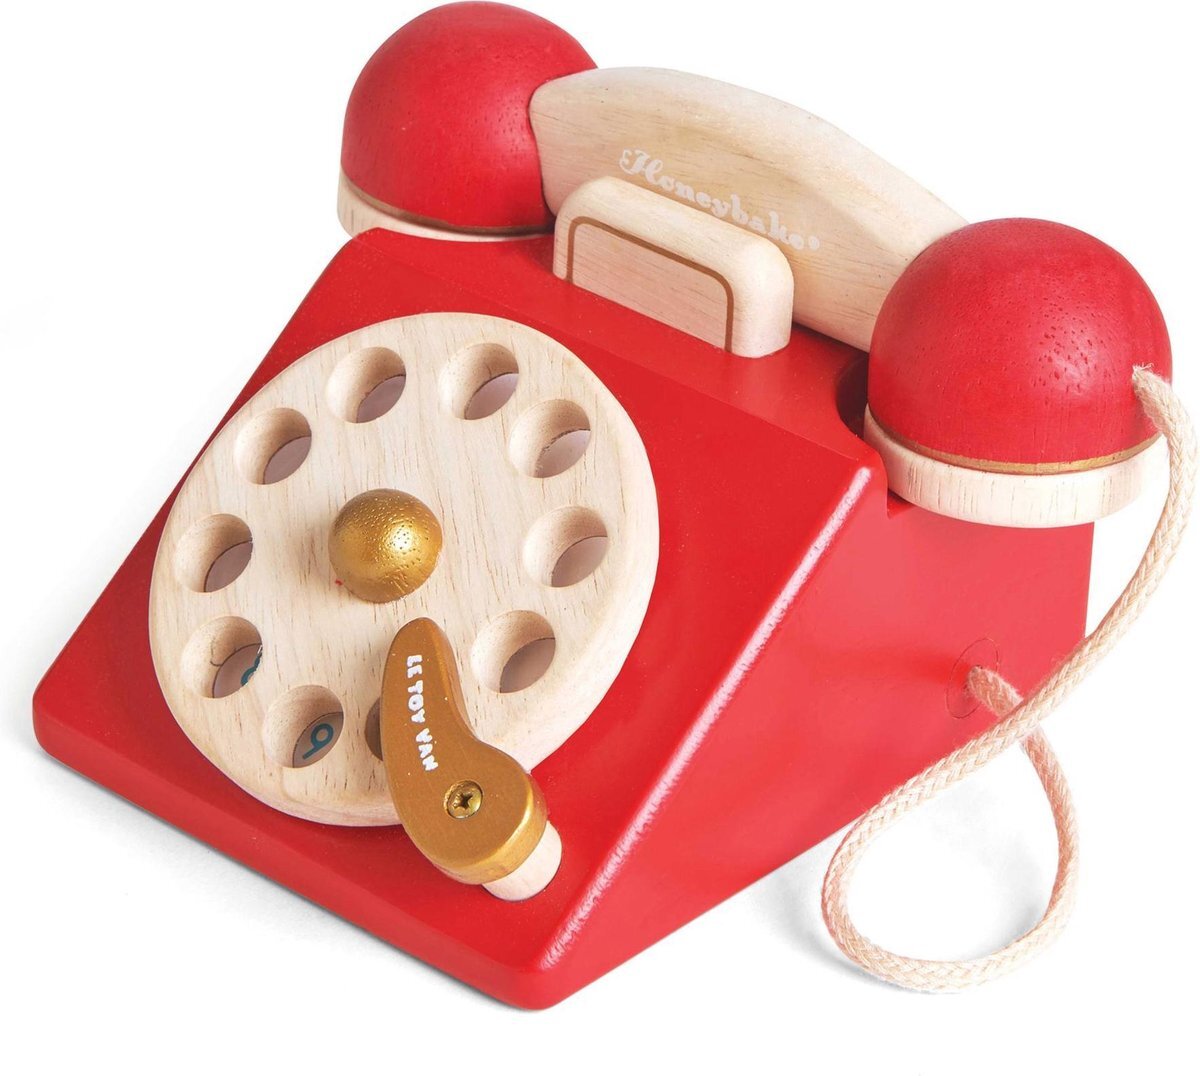 Le Toy Van Van Honeybake Play Vintage Phone